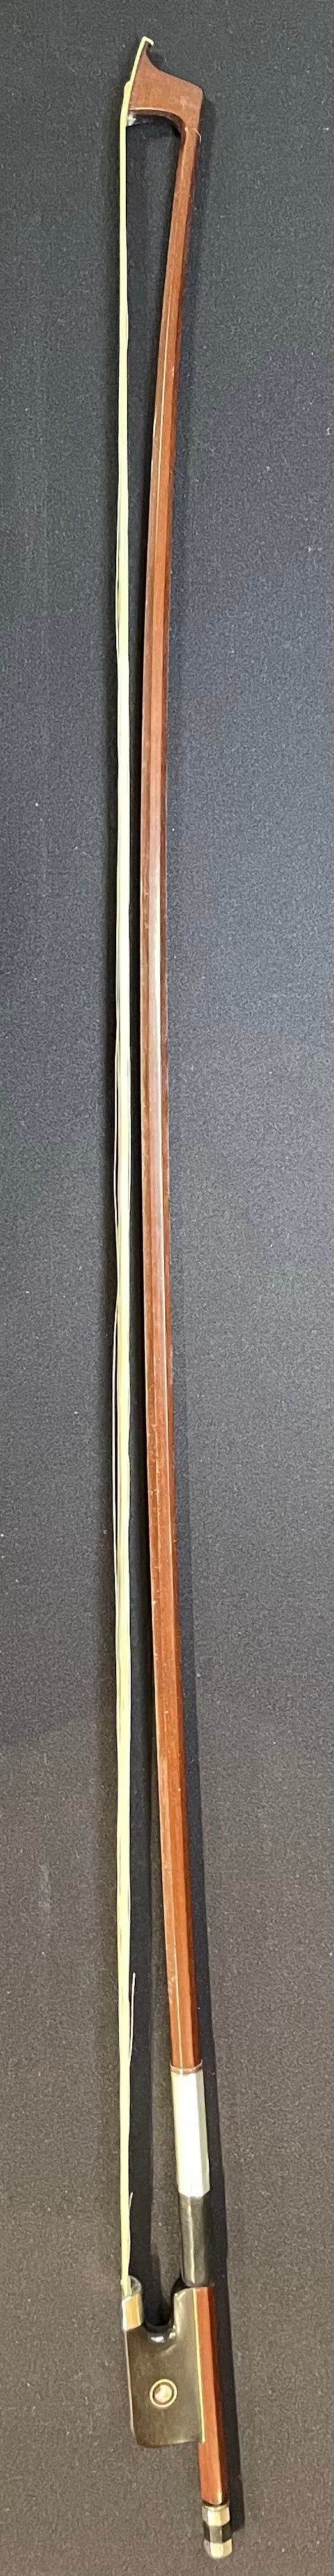 Full Size Viola Bow - LS300 Wood Model